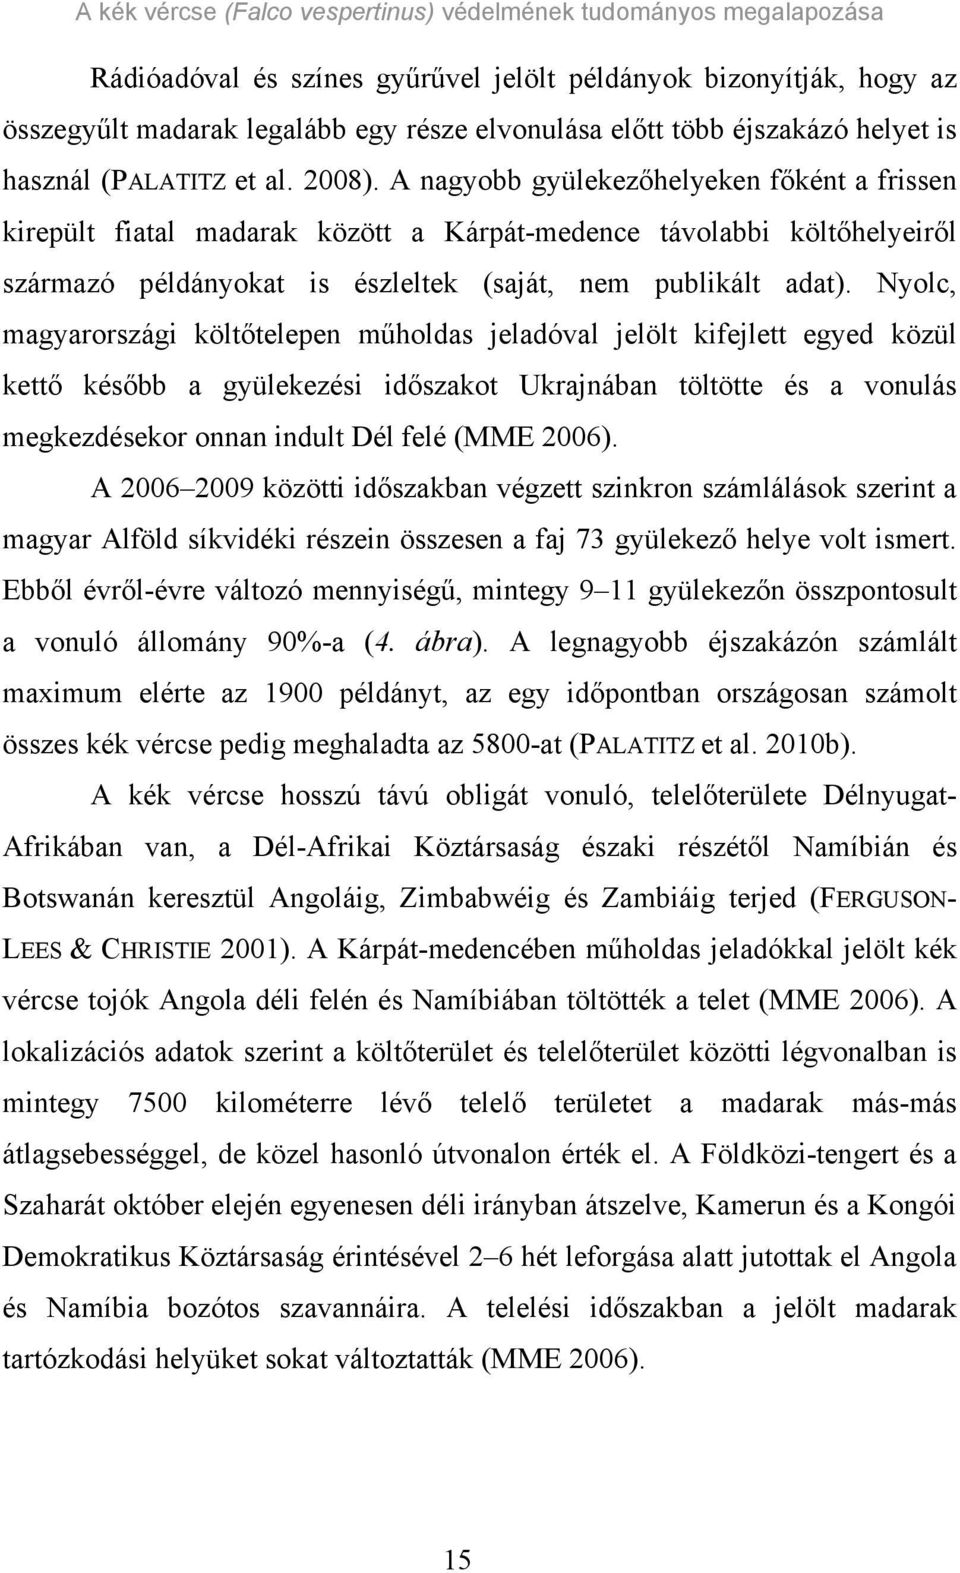 Nyolc, magyarországi költőtelepen műholdas jeladóval jelölt kifejlett egyed közül kettő később a gyülekezési időszakot Ukrajnában töltötte és a vonulás megkezdésekor onnan indult Dél felé (MME 2006).